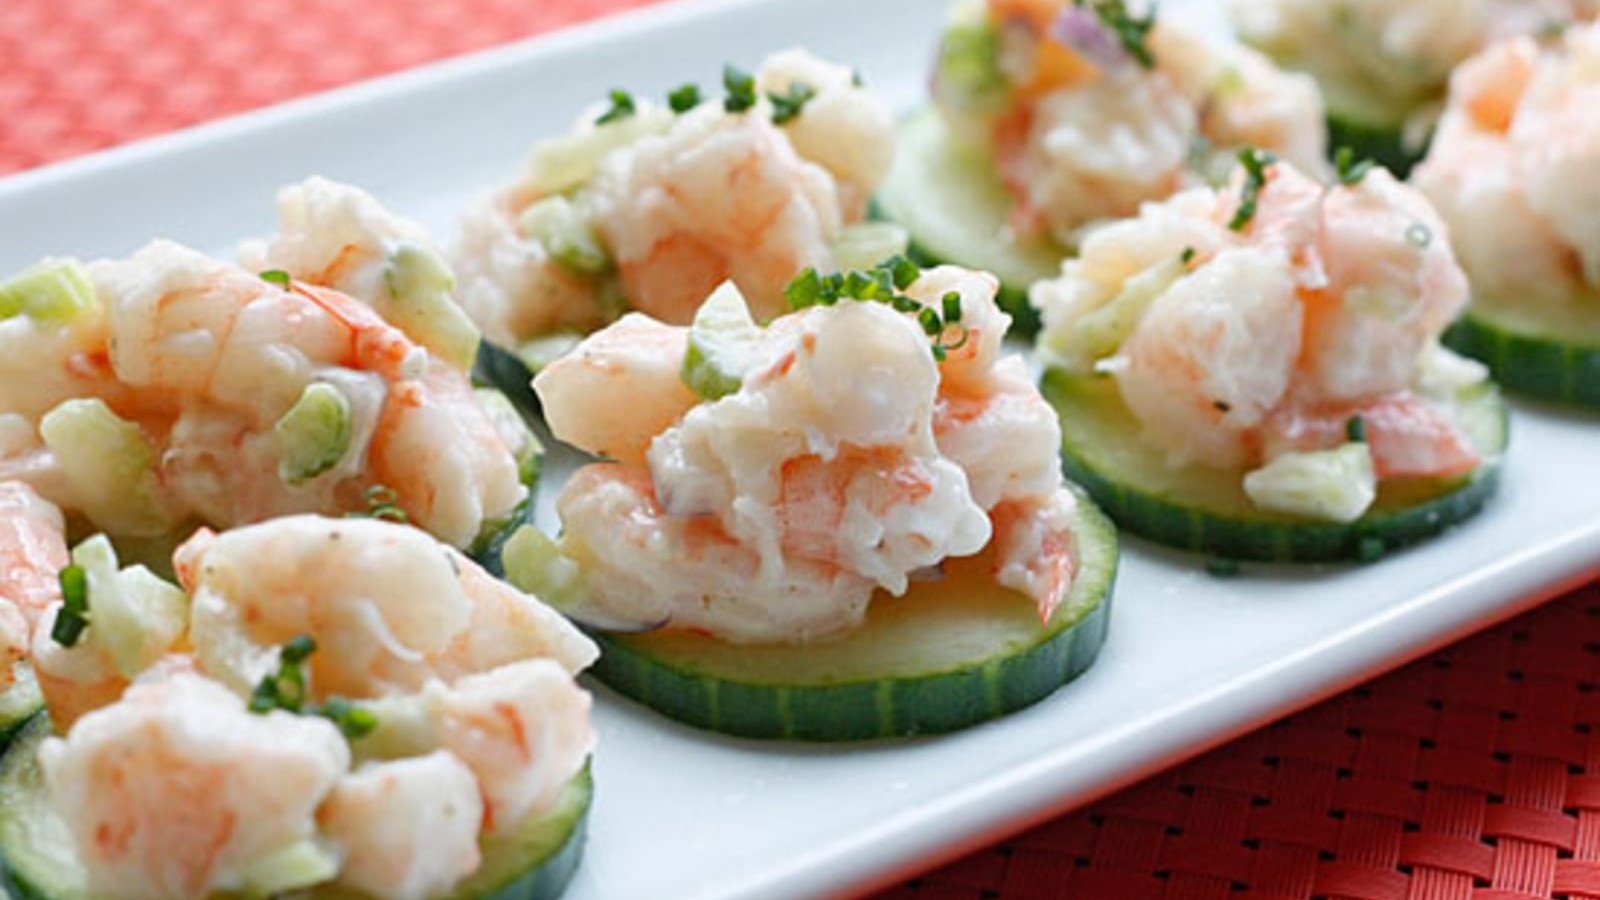 Image of Shrimp Salad on Cucumber Slices